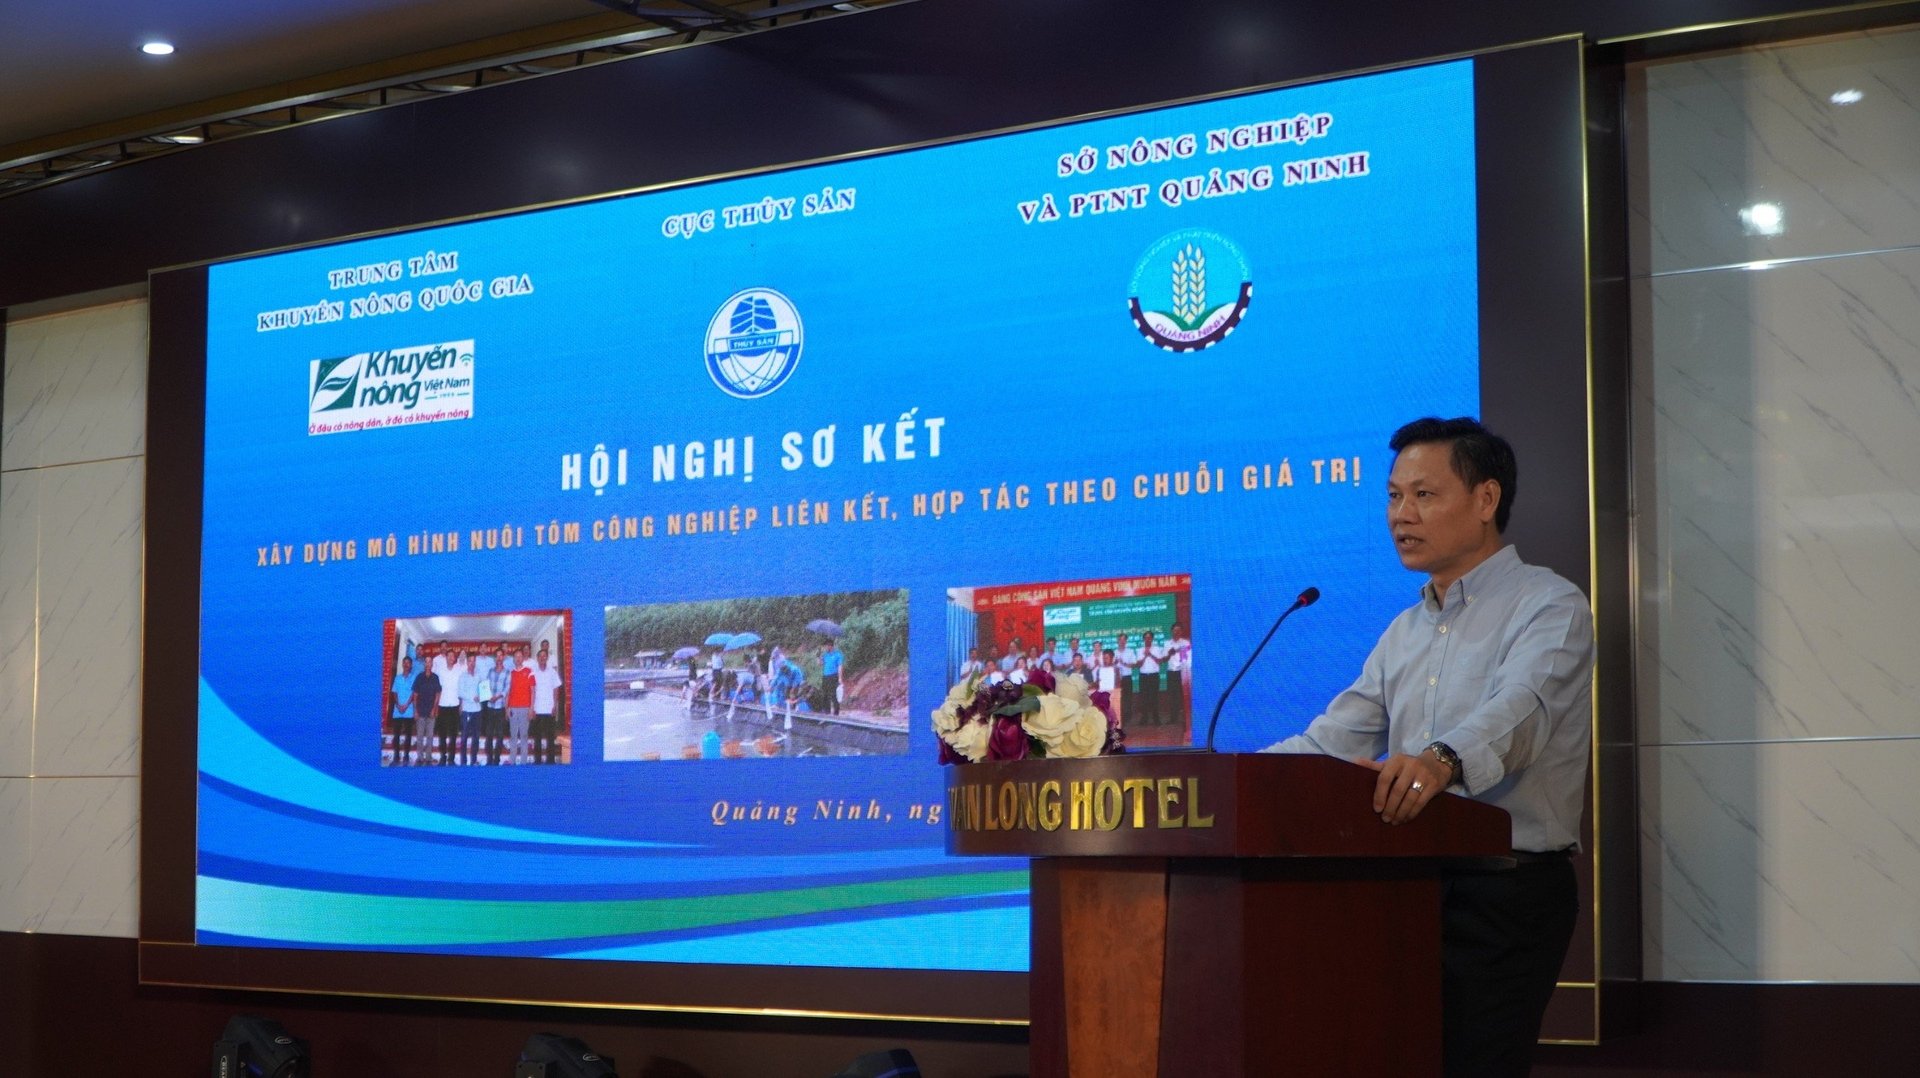 Ông Ngô Tất Thắng, Phó Giám đốc Sở NN-PTNT tỉnh Quảng Ninh, phát biểu tại hội nghị. Ảnh: Nguyễn Thành.